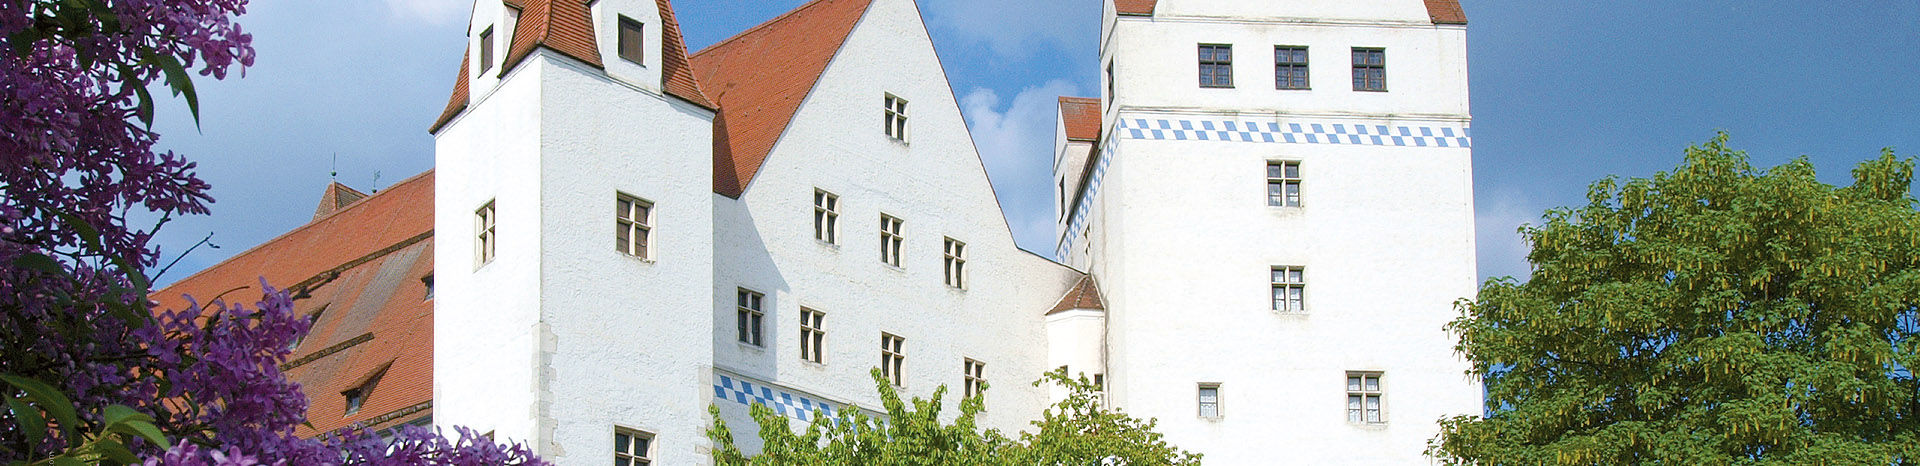 Ingolstadt. Neues Schloss